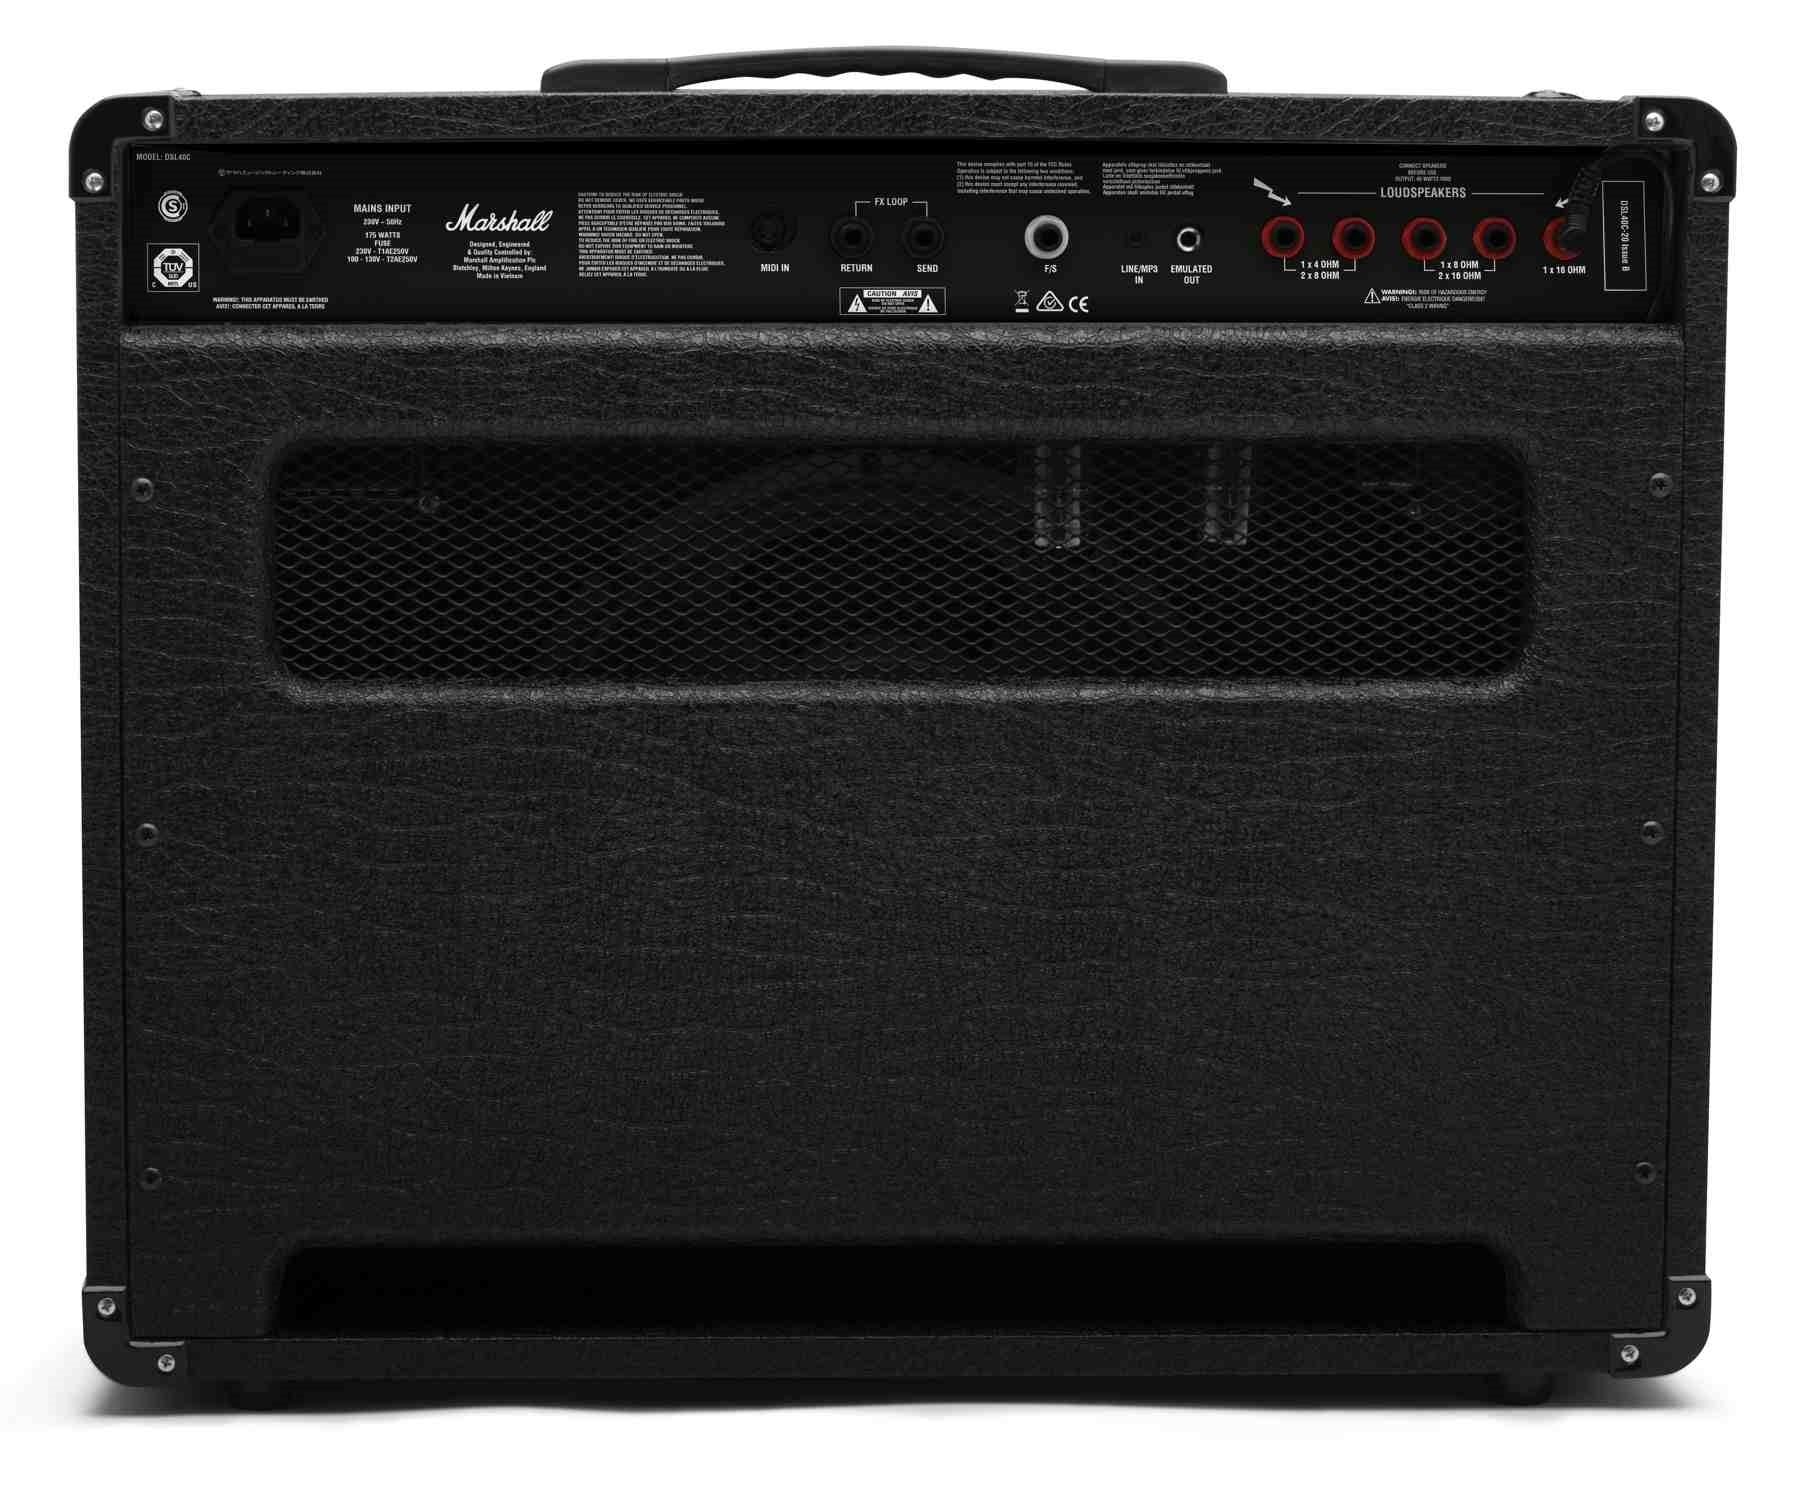 Marshall DSL40CR 40 Watt Guitar Amplifier COMBO